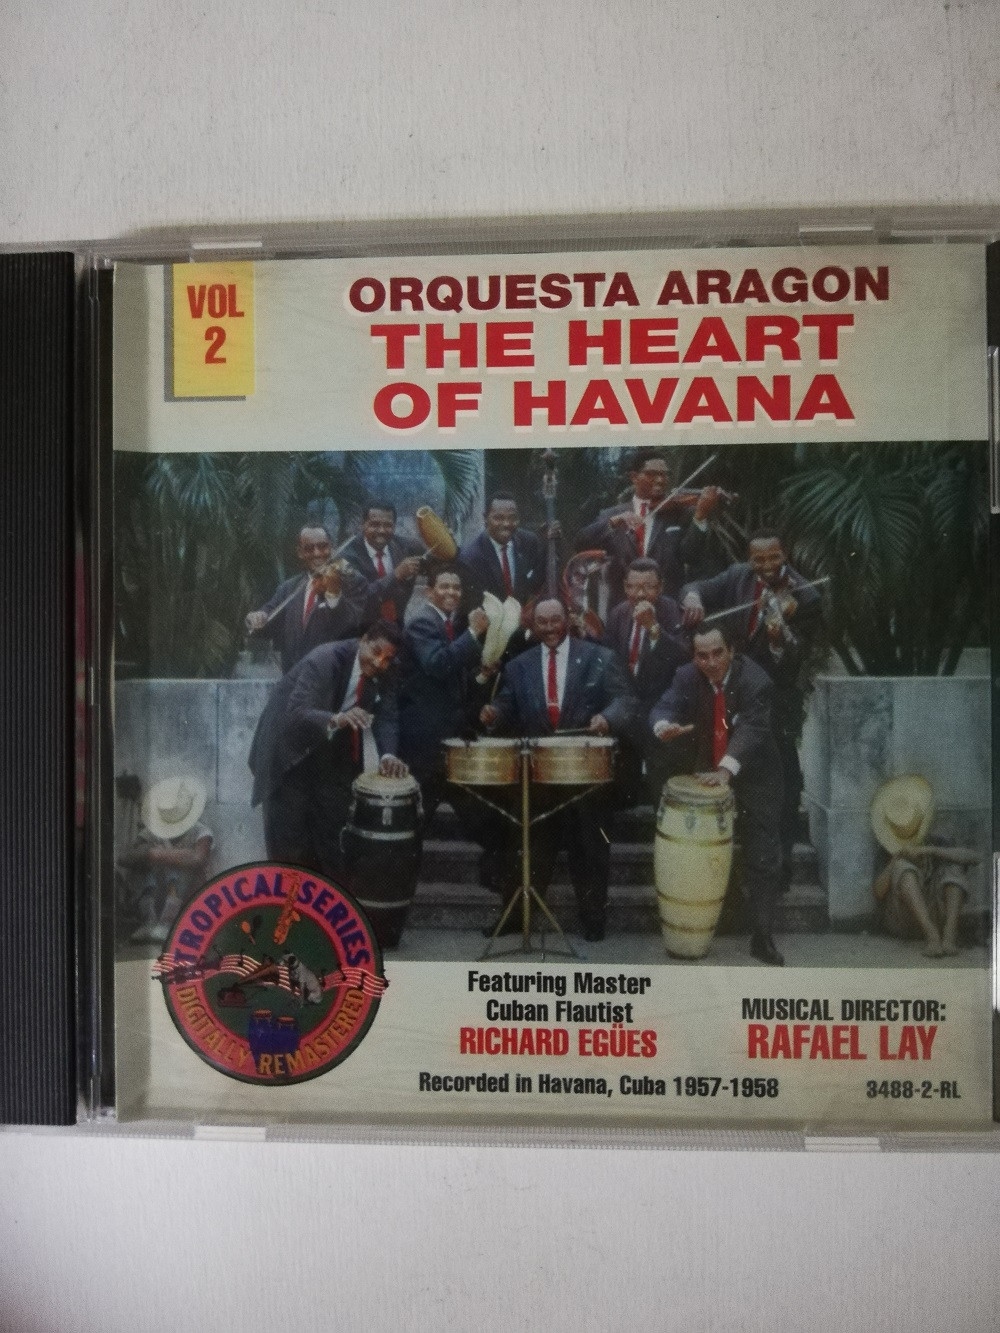 Imagen CD ORQUESTA ARAGÓN - THE HEART OF HAVANA VOL. 2 1